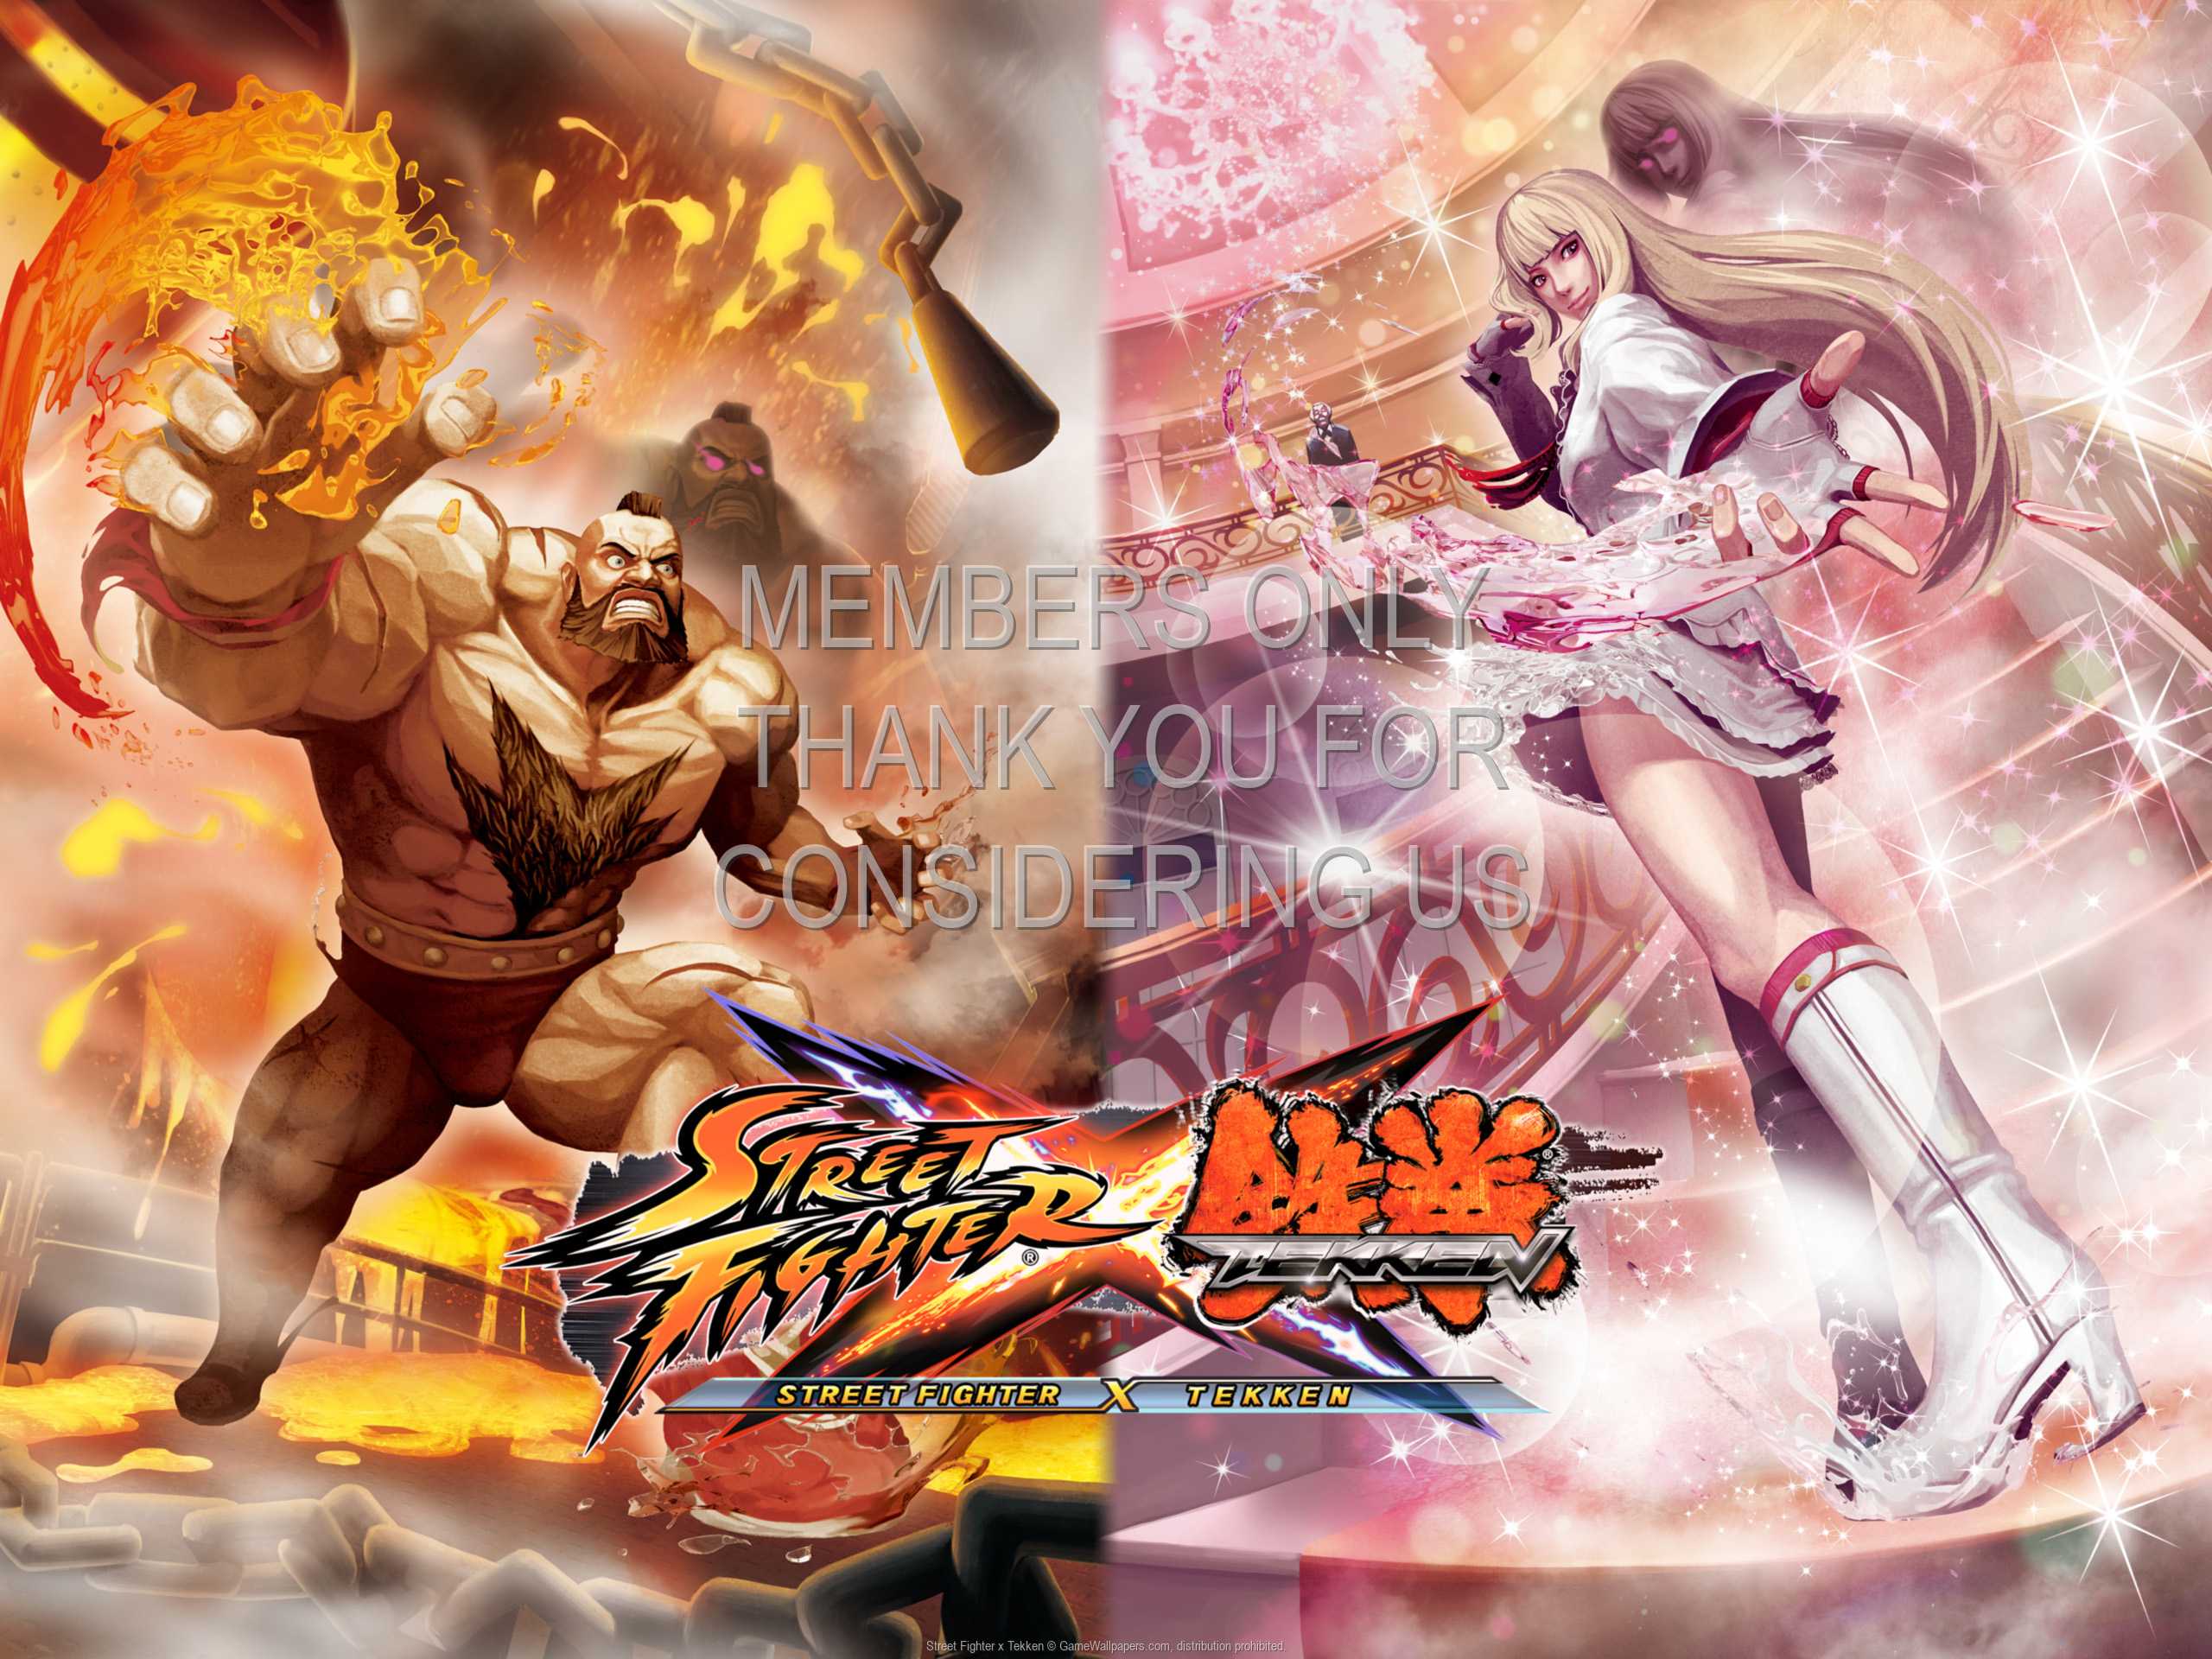 Street Fighter x Tekken 1080p%20Horizontal Mobile wallpaper or background 02